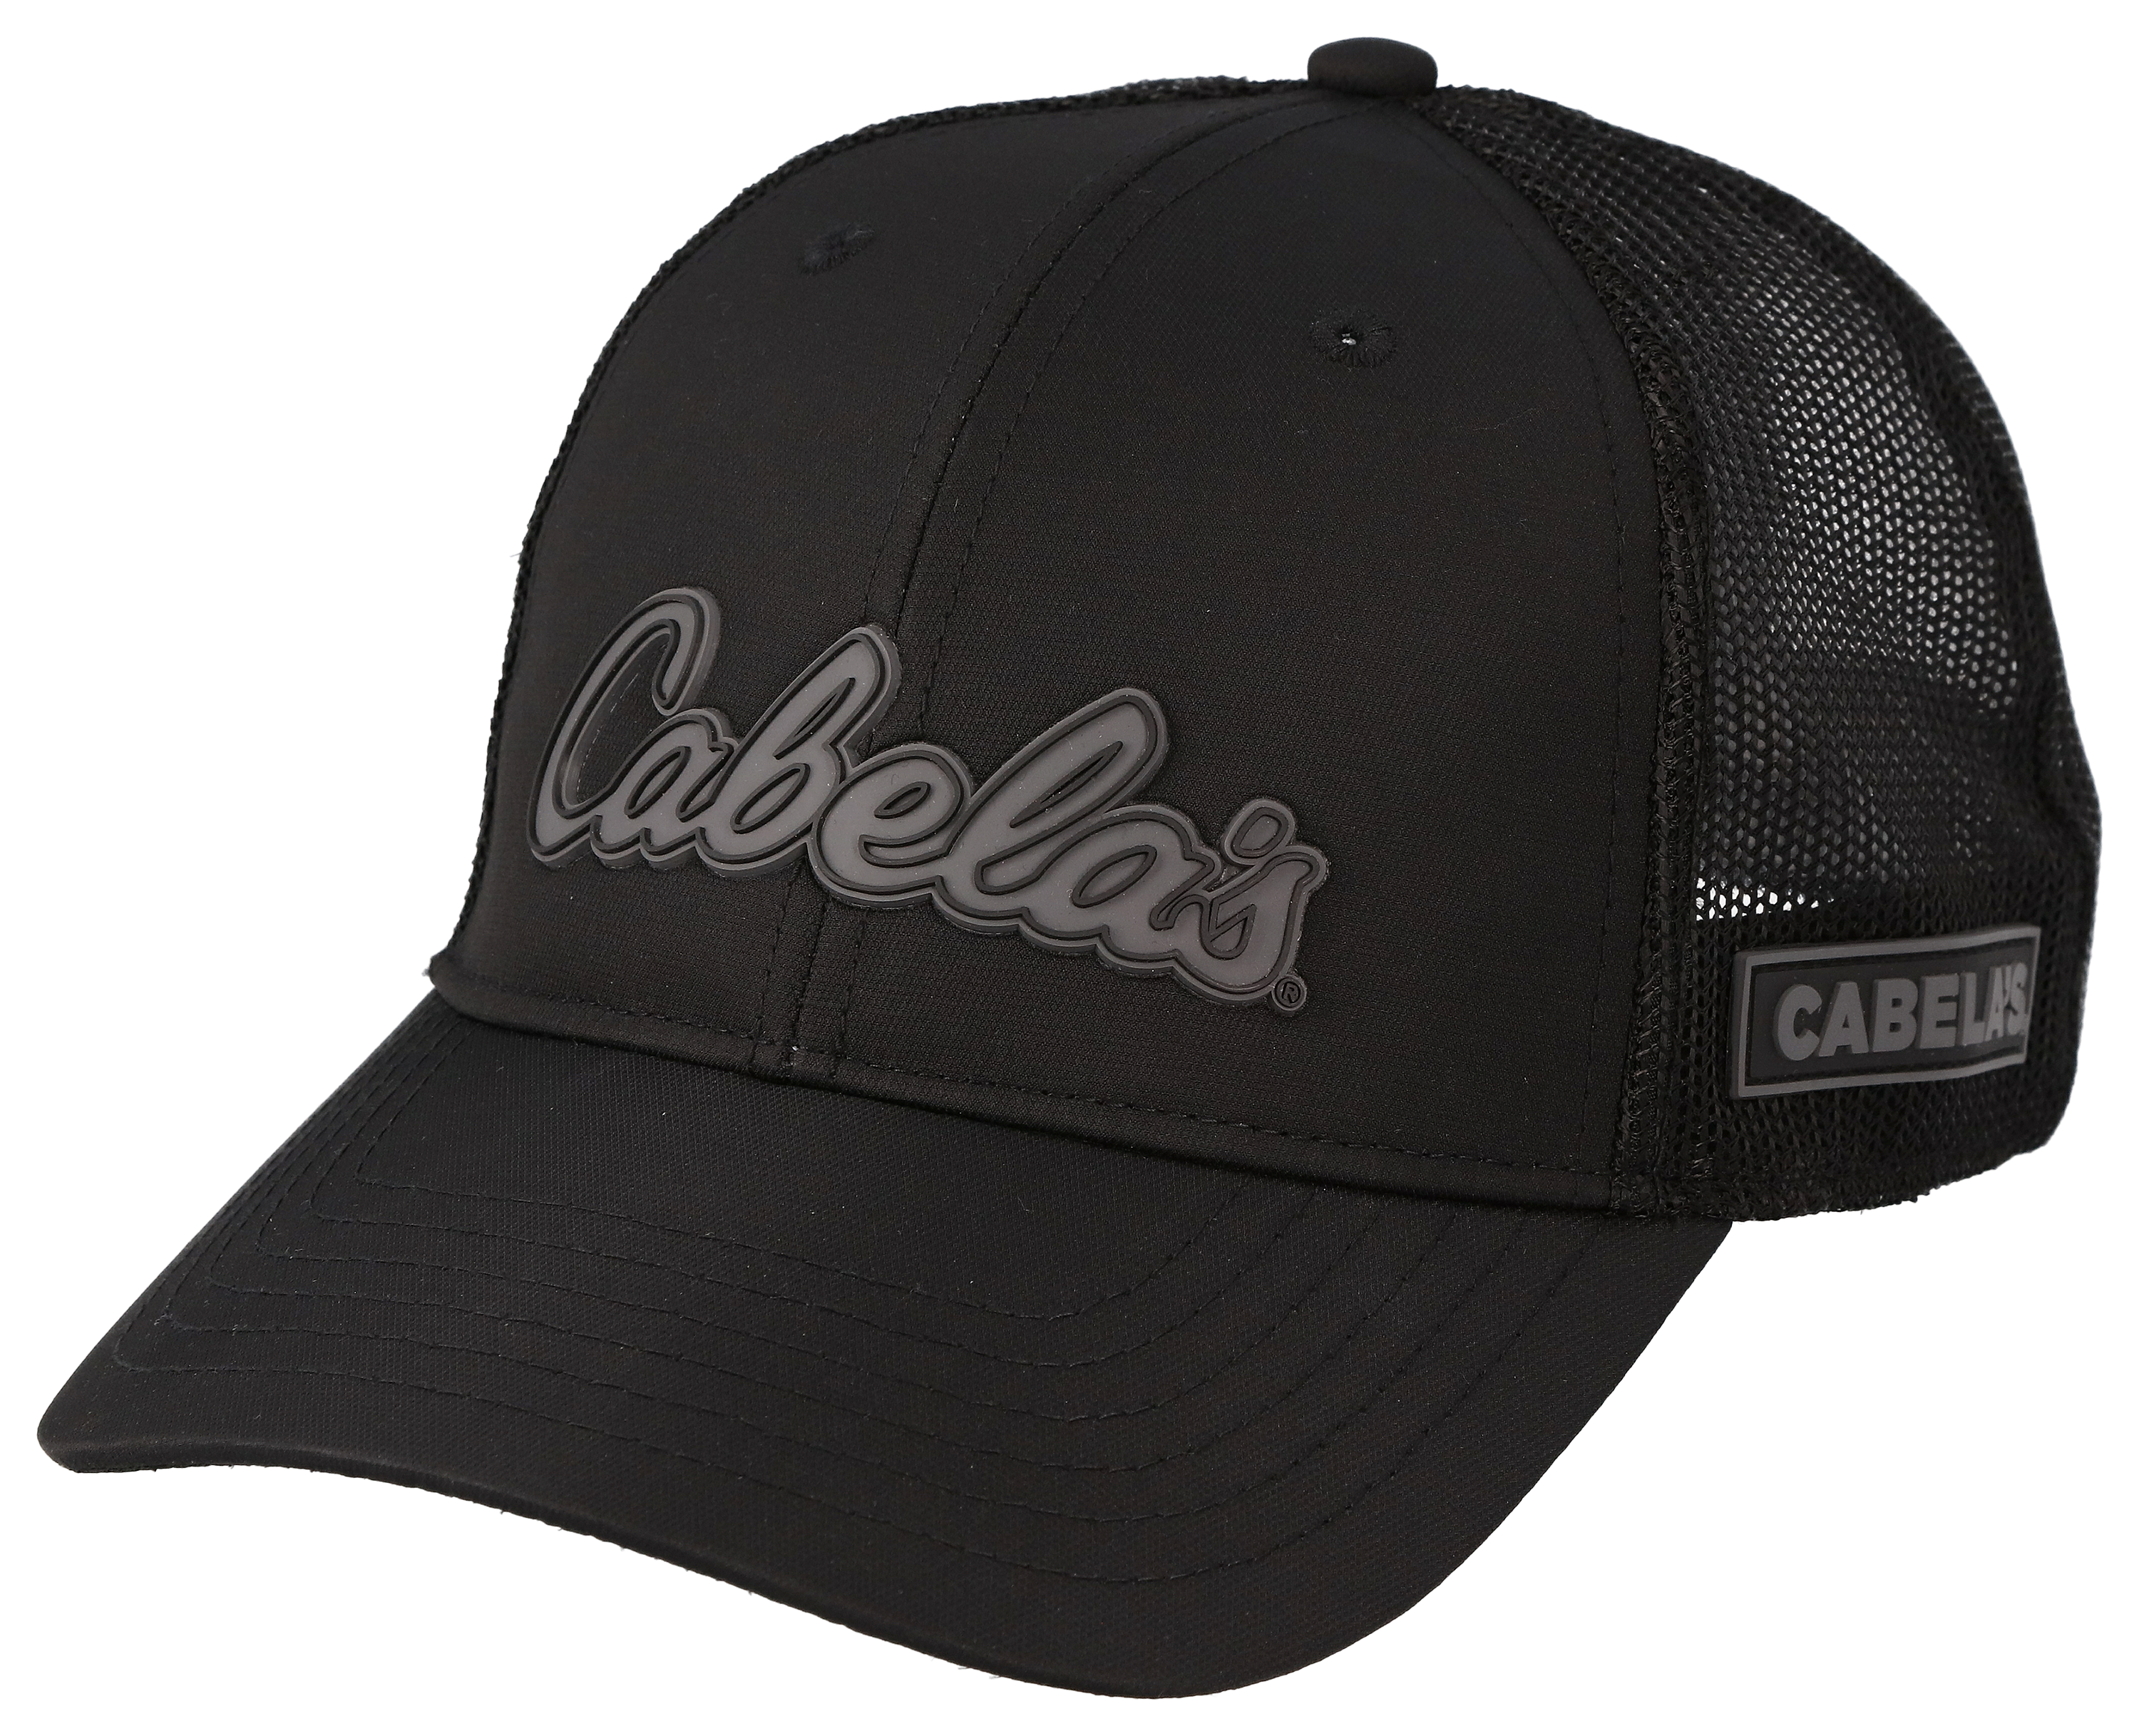 Cabelas Hat Cap Strap Back Mens Green Adjustable OSFM One Size 